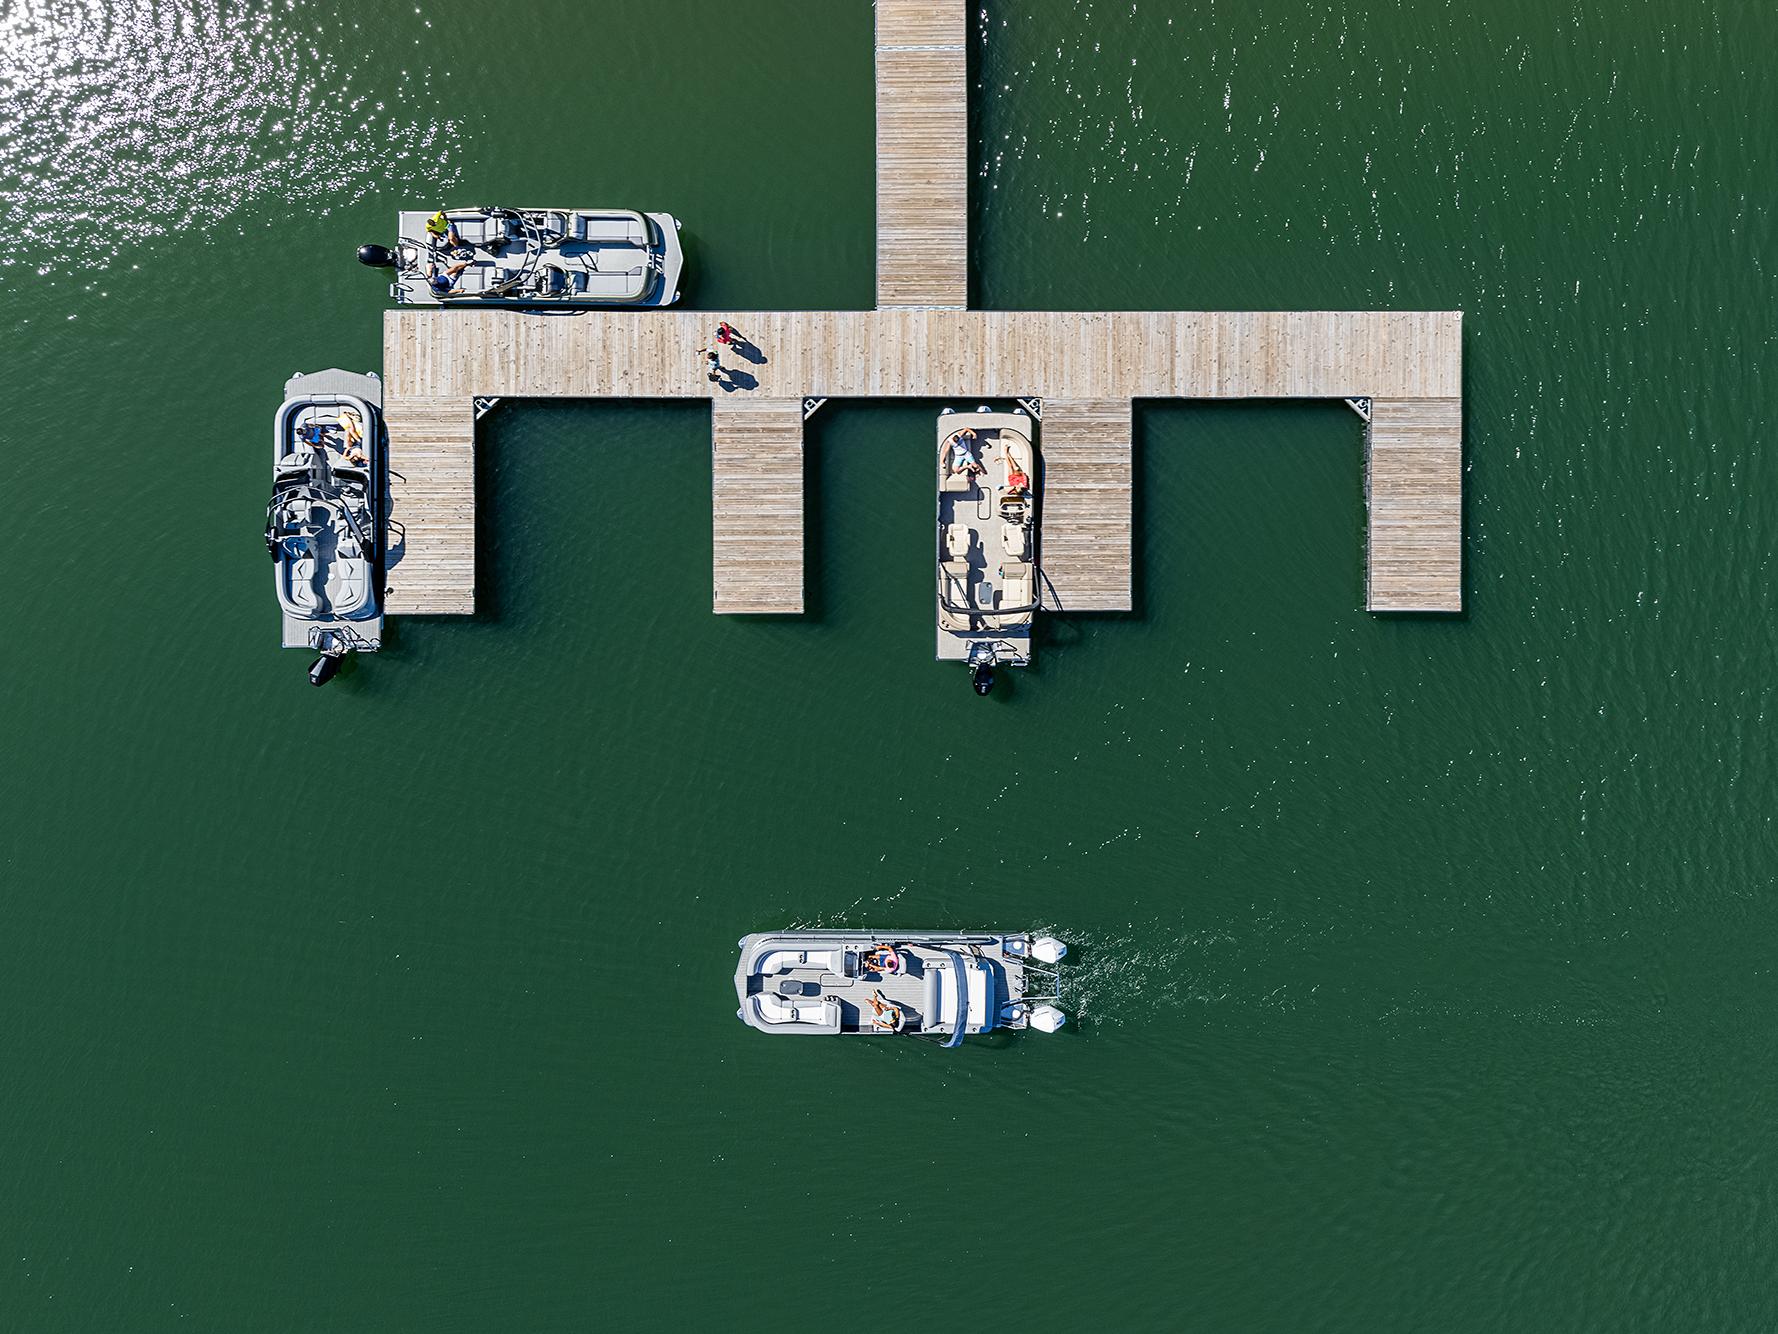 Pontoon Boats docking on a lake